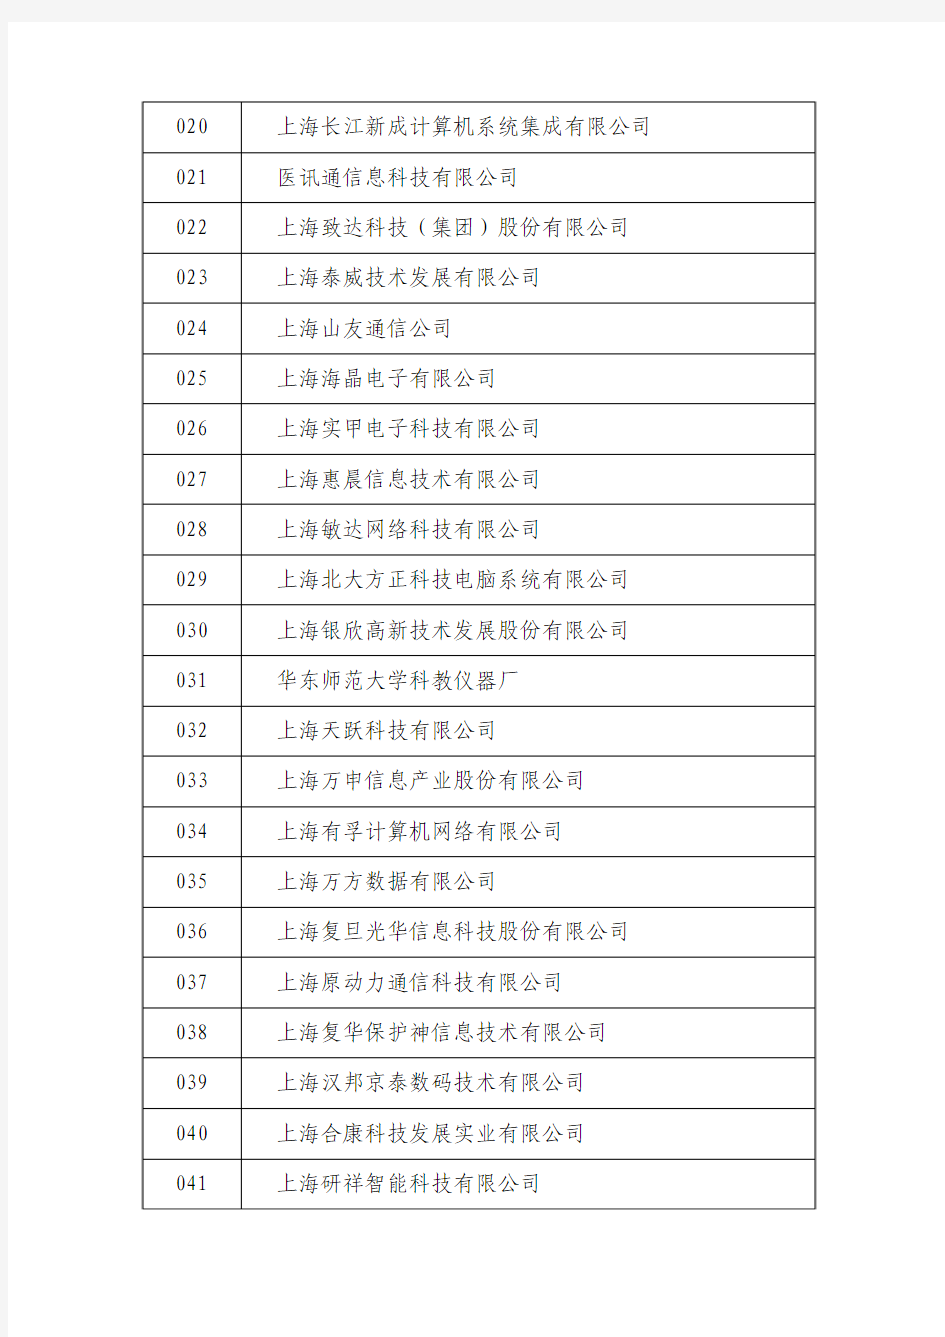 上海市 2008年第一批拟认定高新技术企业名单